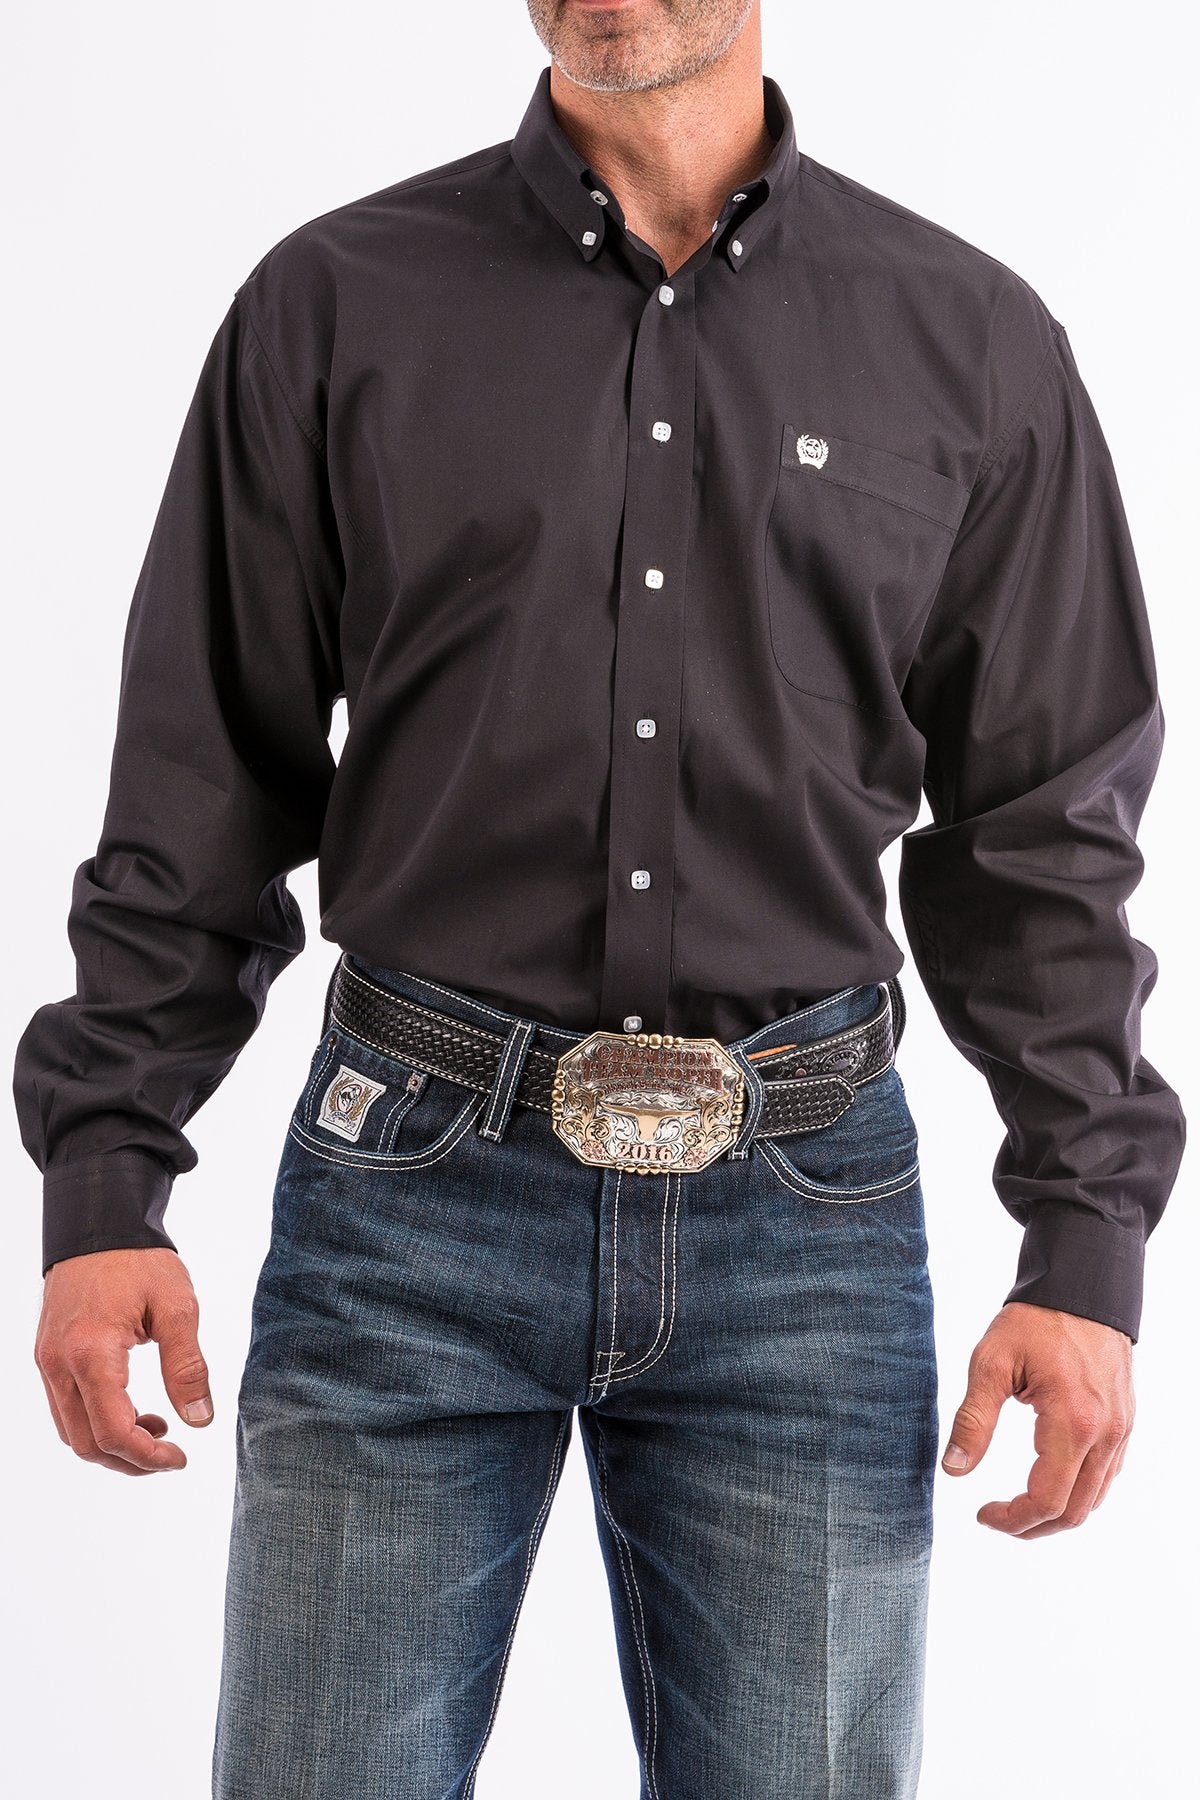 CINCH MEN'S BLACK LONG SLEEVE SHIRT – Corral Western Wear